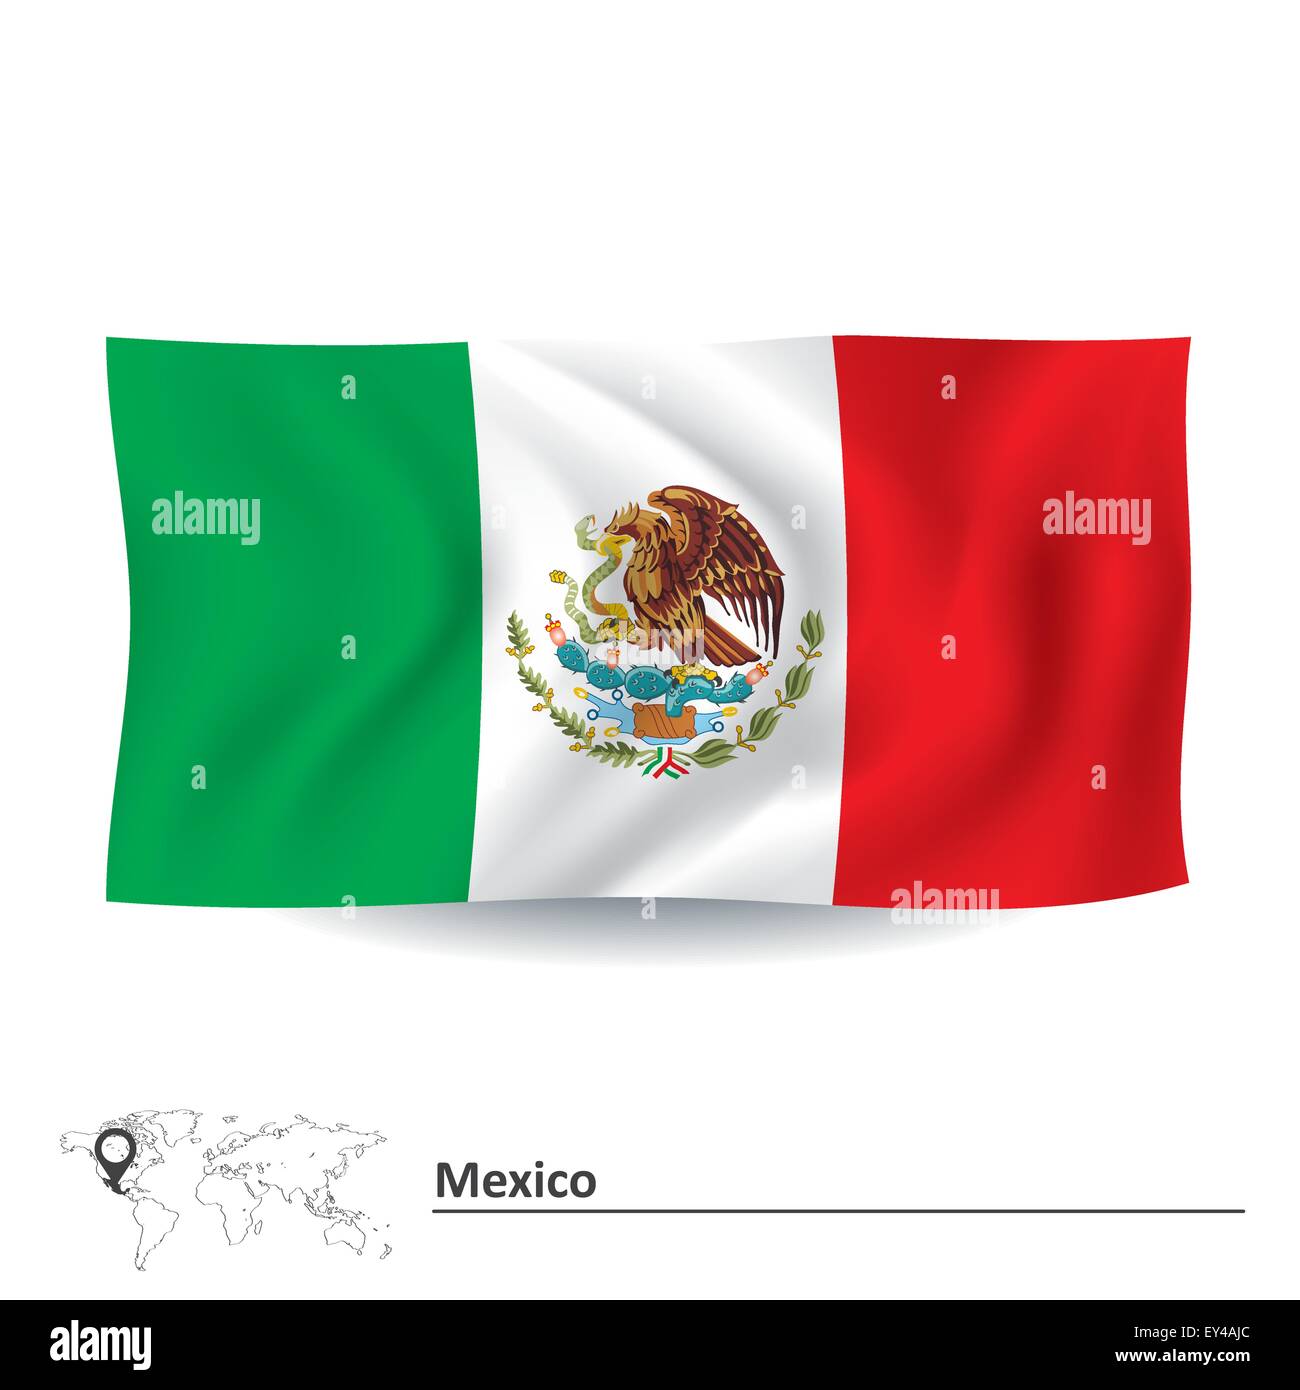 Flagge von Mexiko - Vektor-illustration Stock Vektor